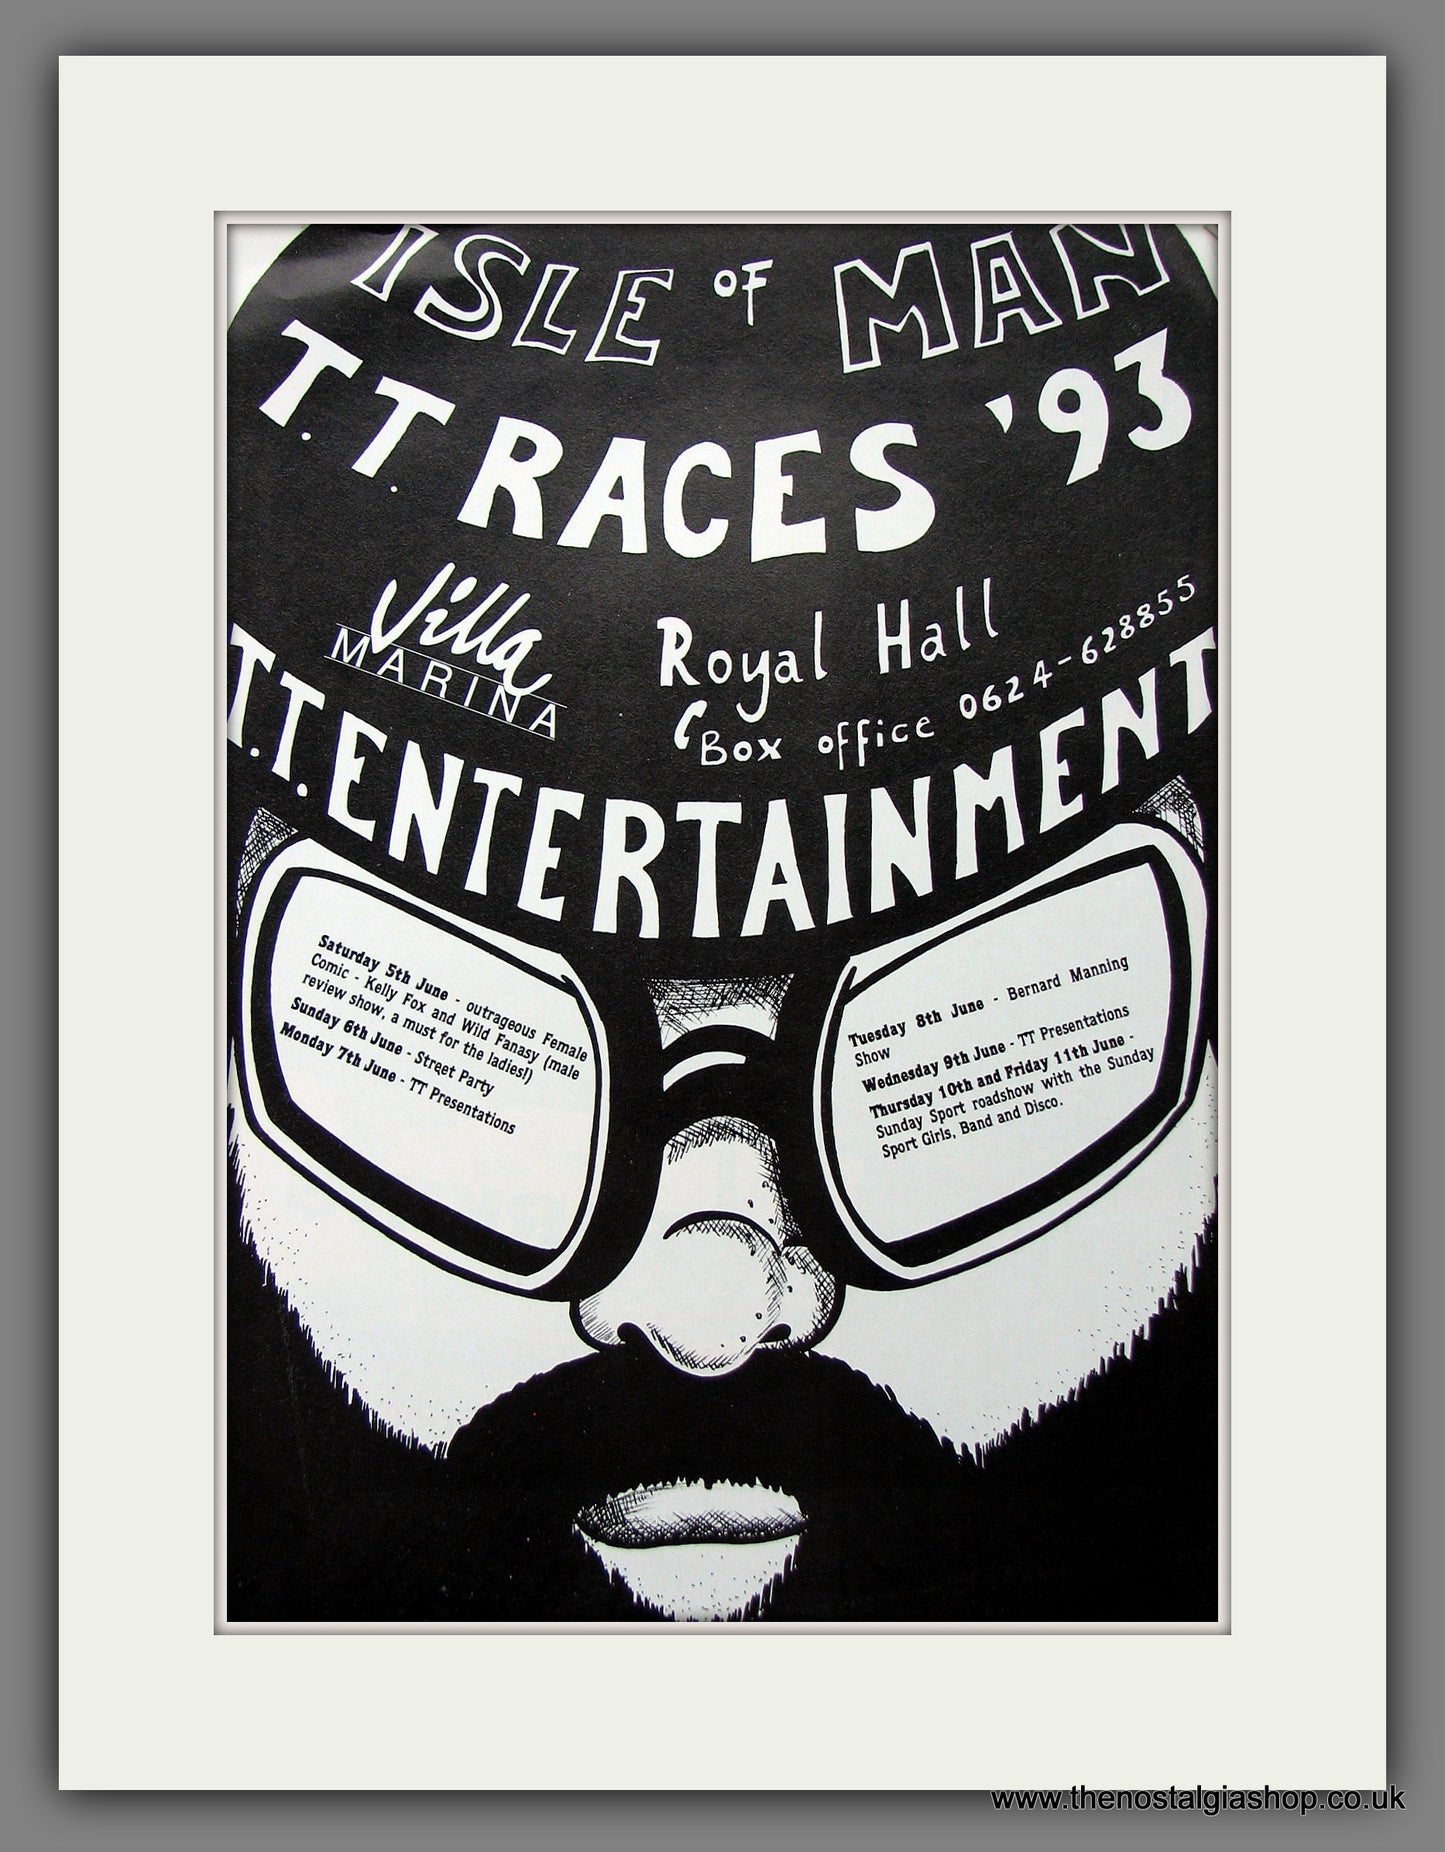 T.T. Races '93. Villa Marina Entertainment. Original Advert 1993 (ref AD55373)